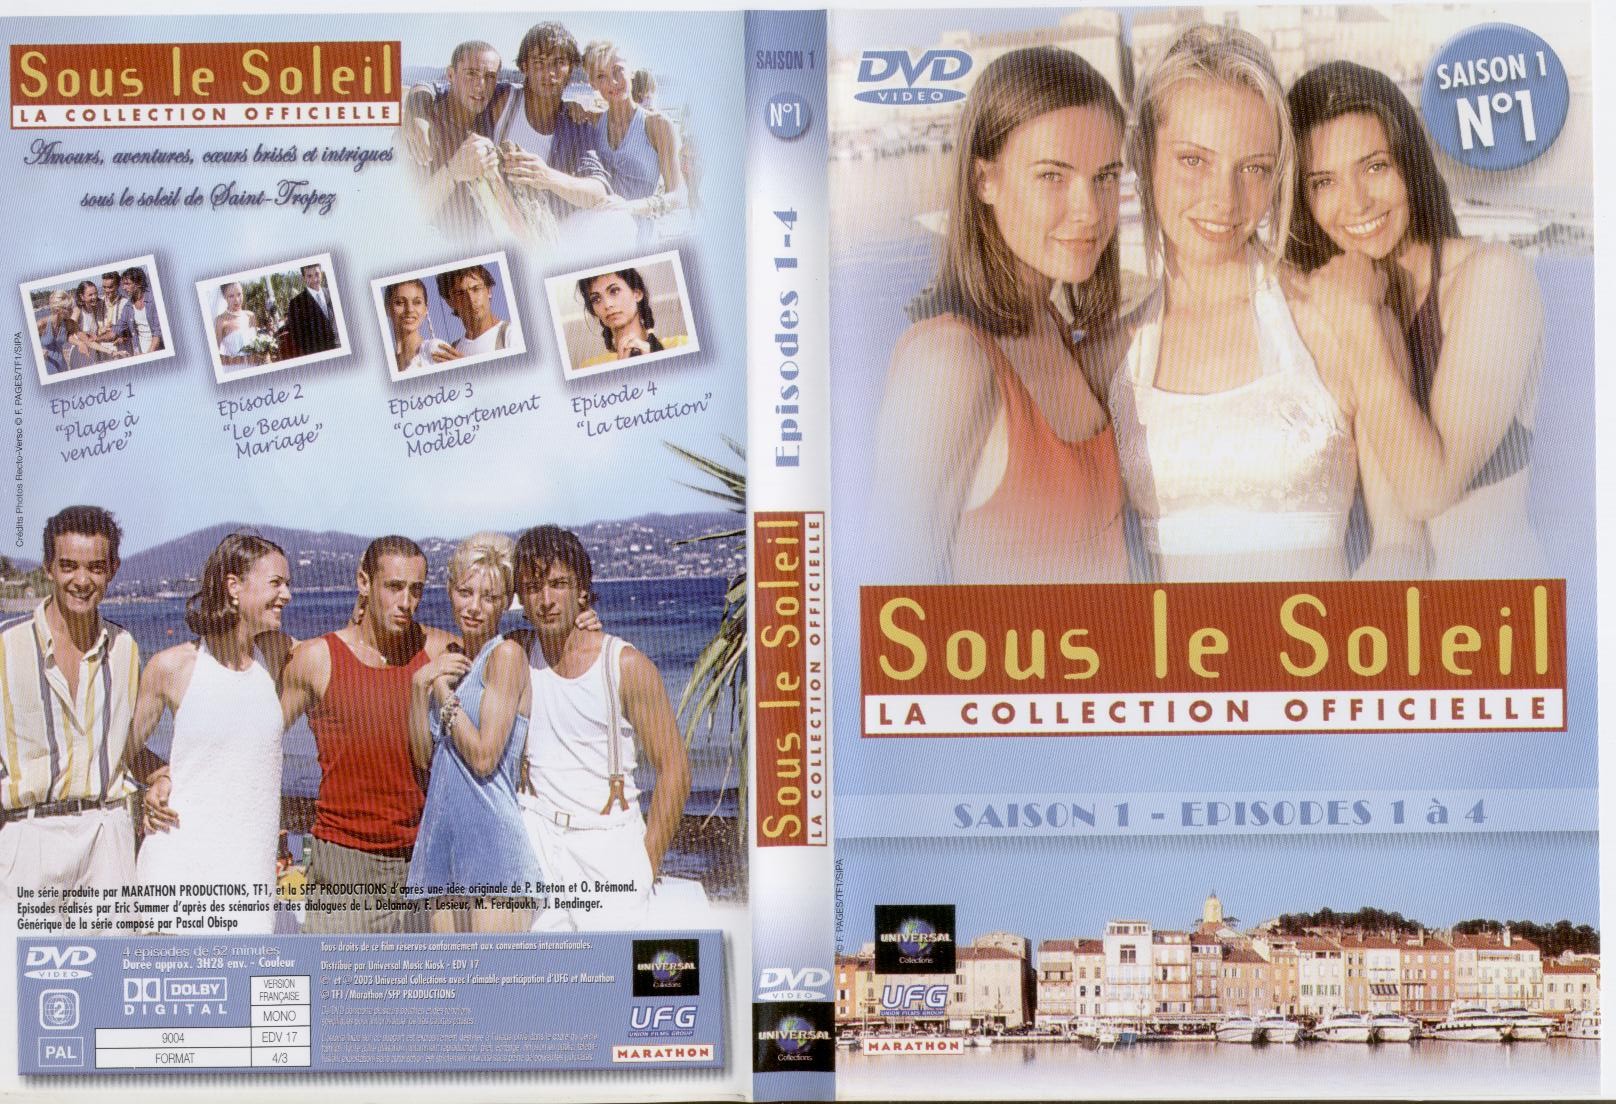 Jaquette DVD Sous le soleil saison 1 vol 1